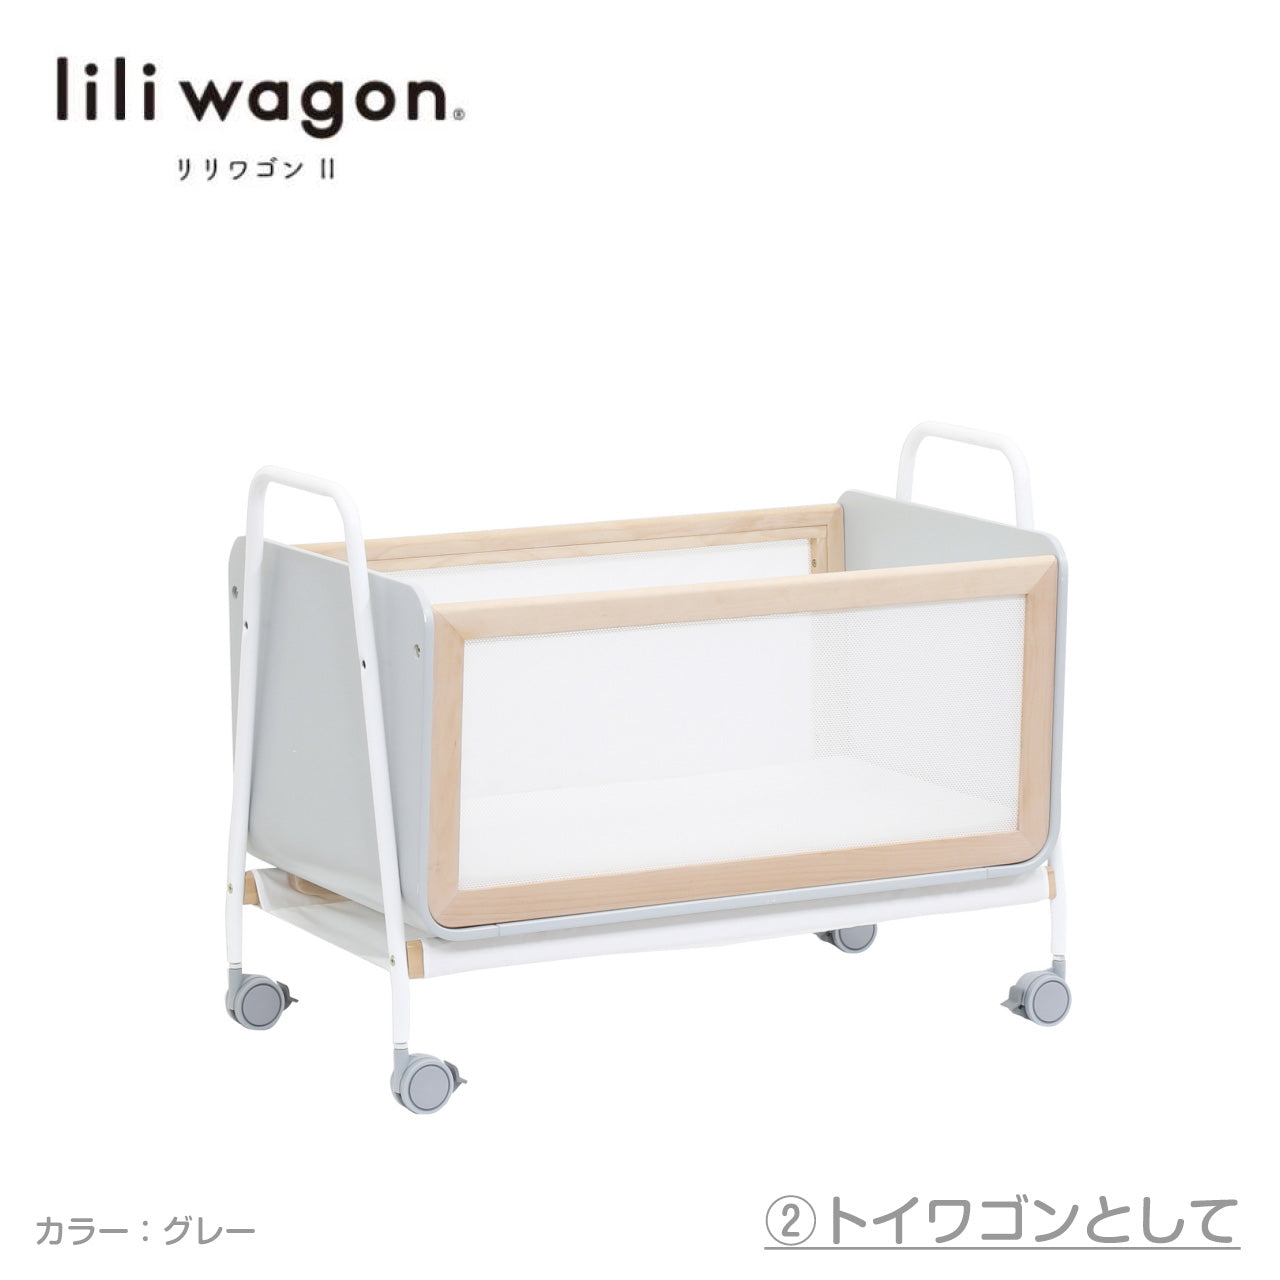 喫煙者ペットなしリリワゴン 2 lili wagon II - ベッド